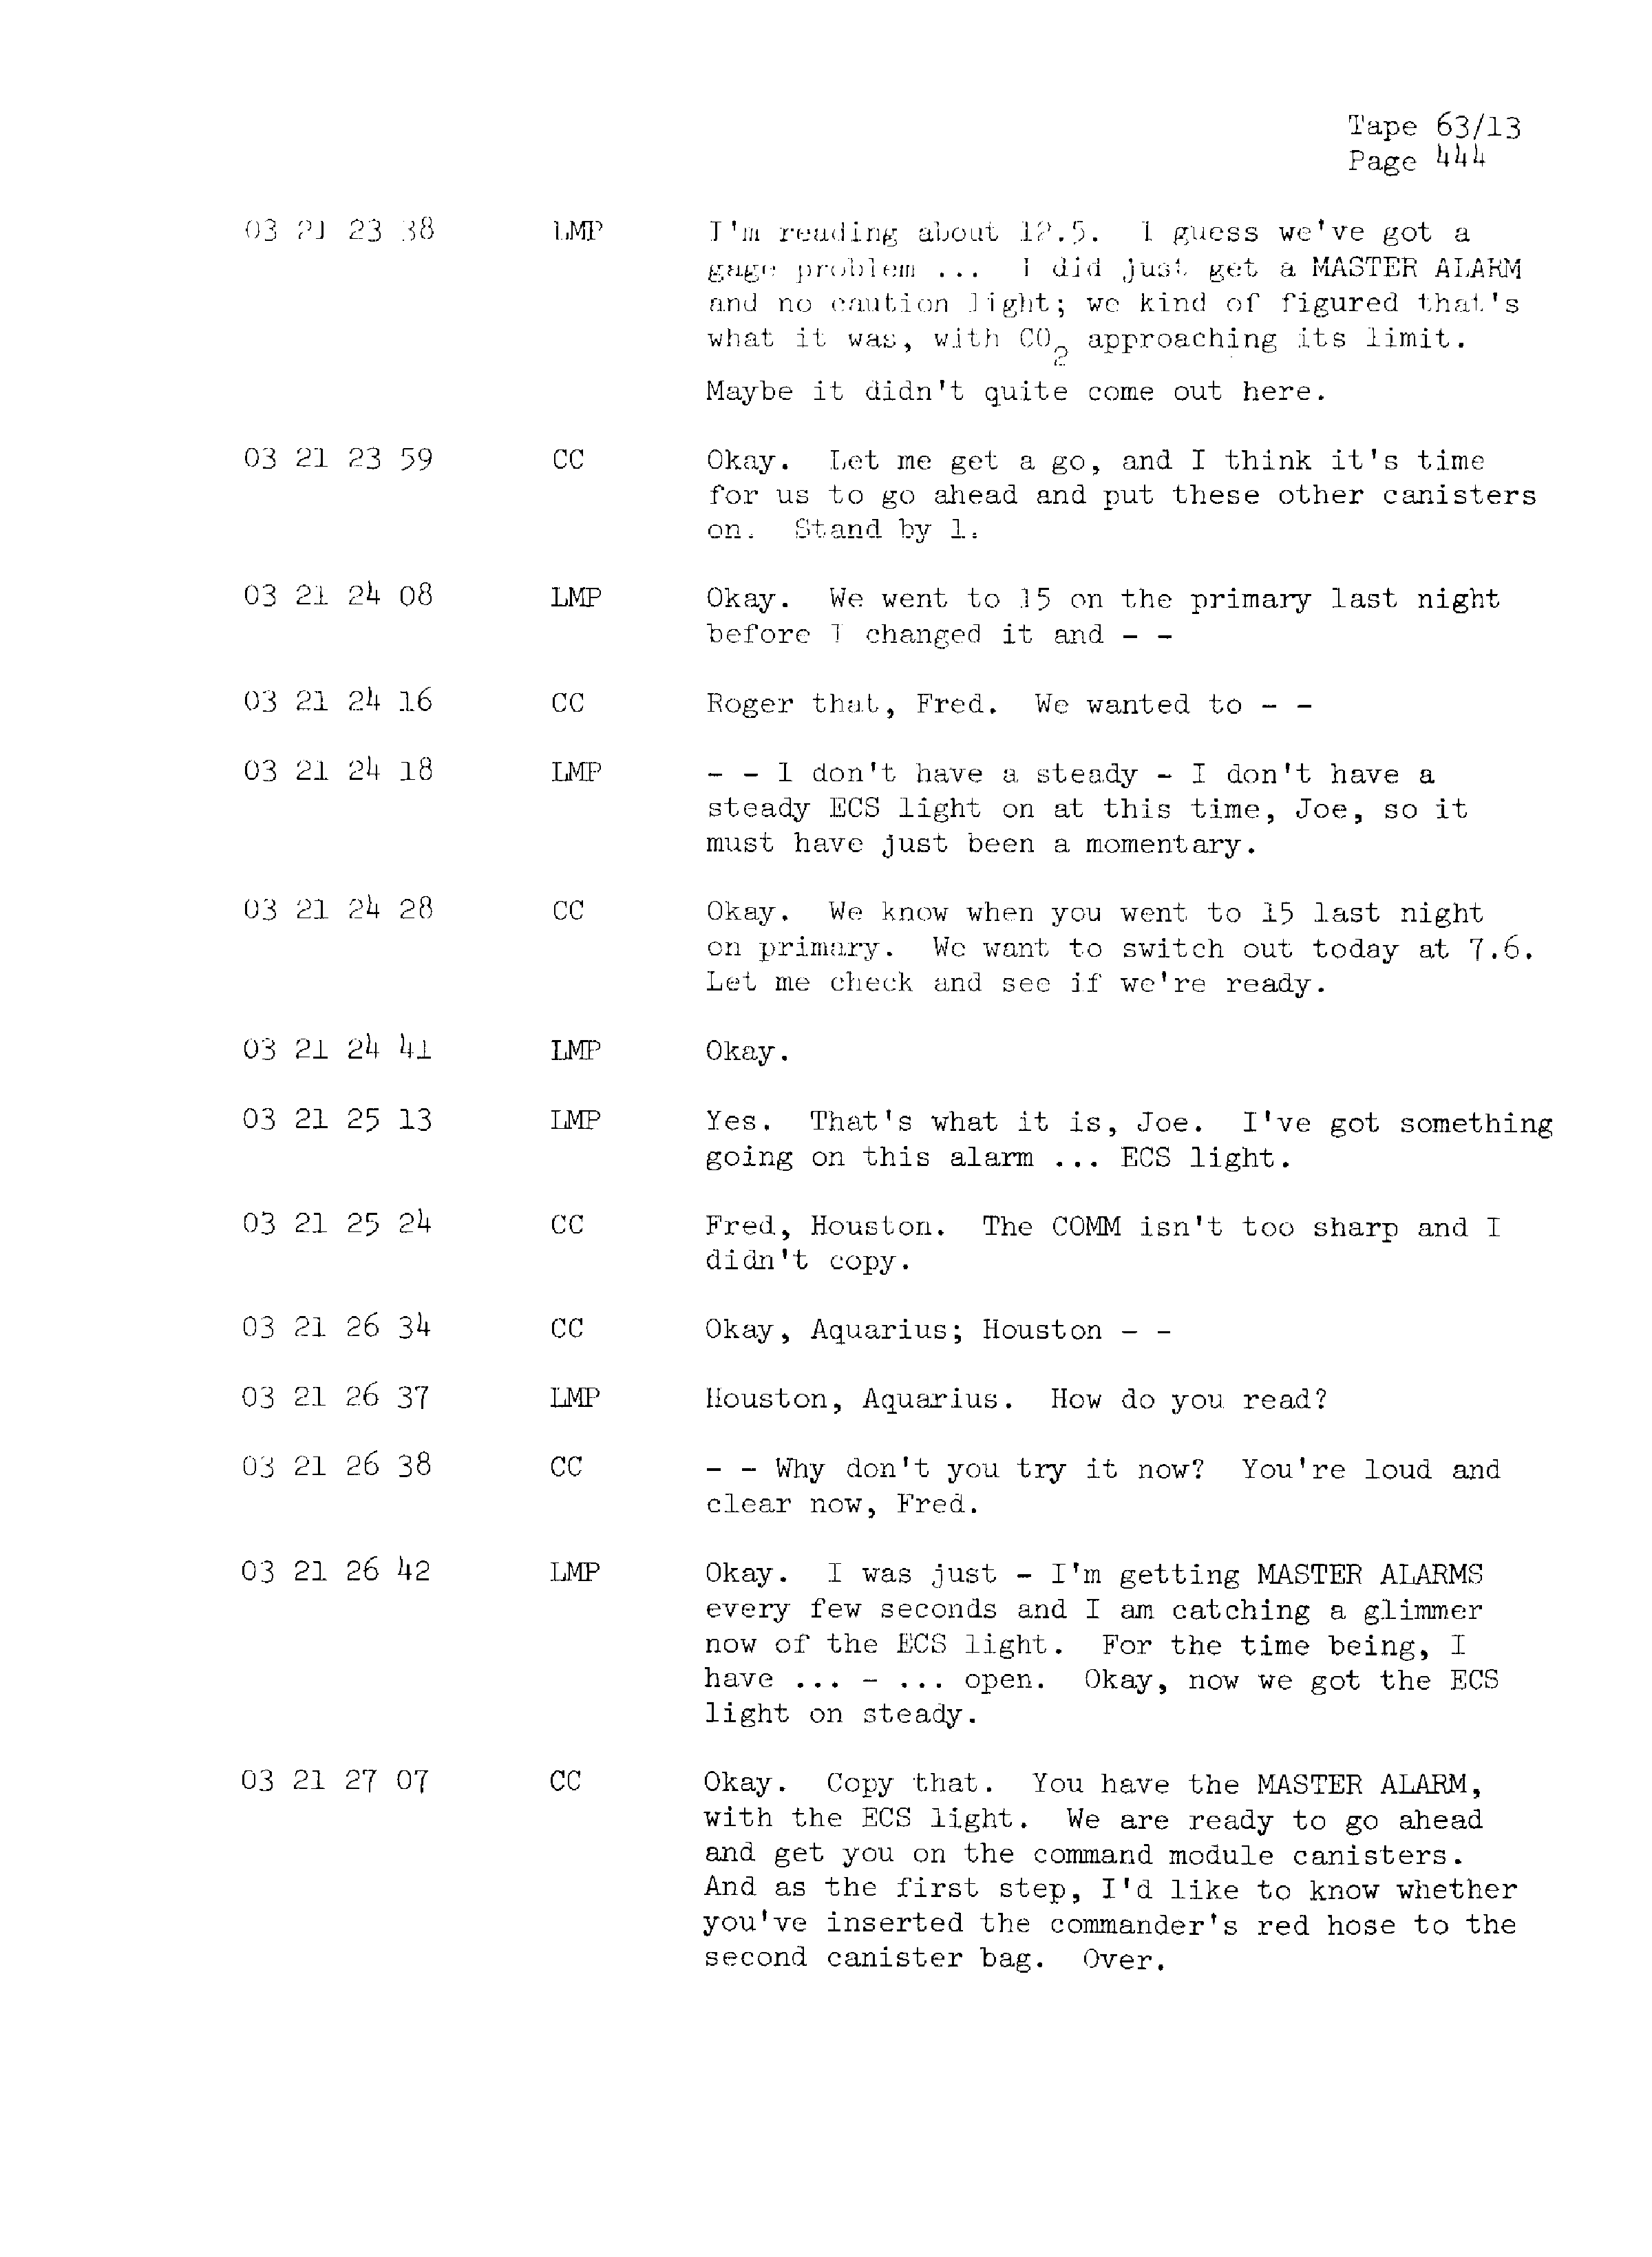 Page 451 of Apollo 13’s original transcript